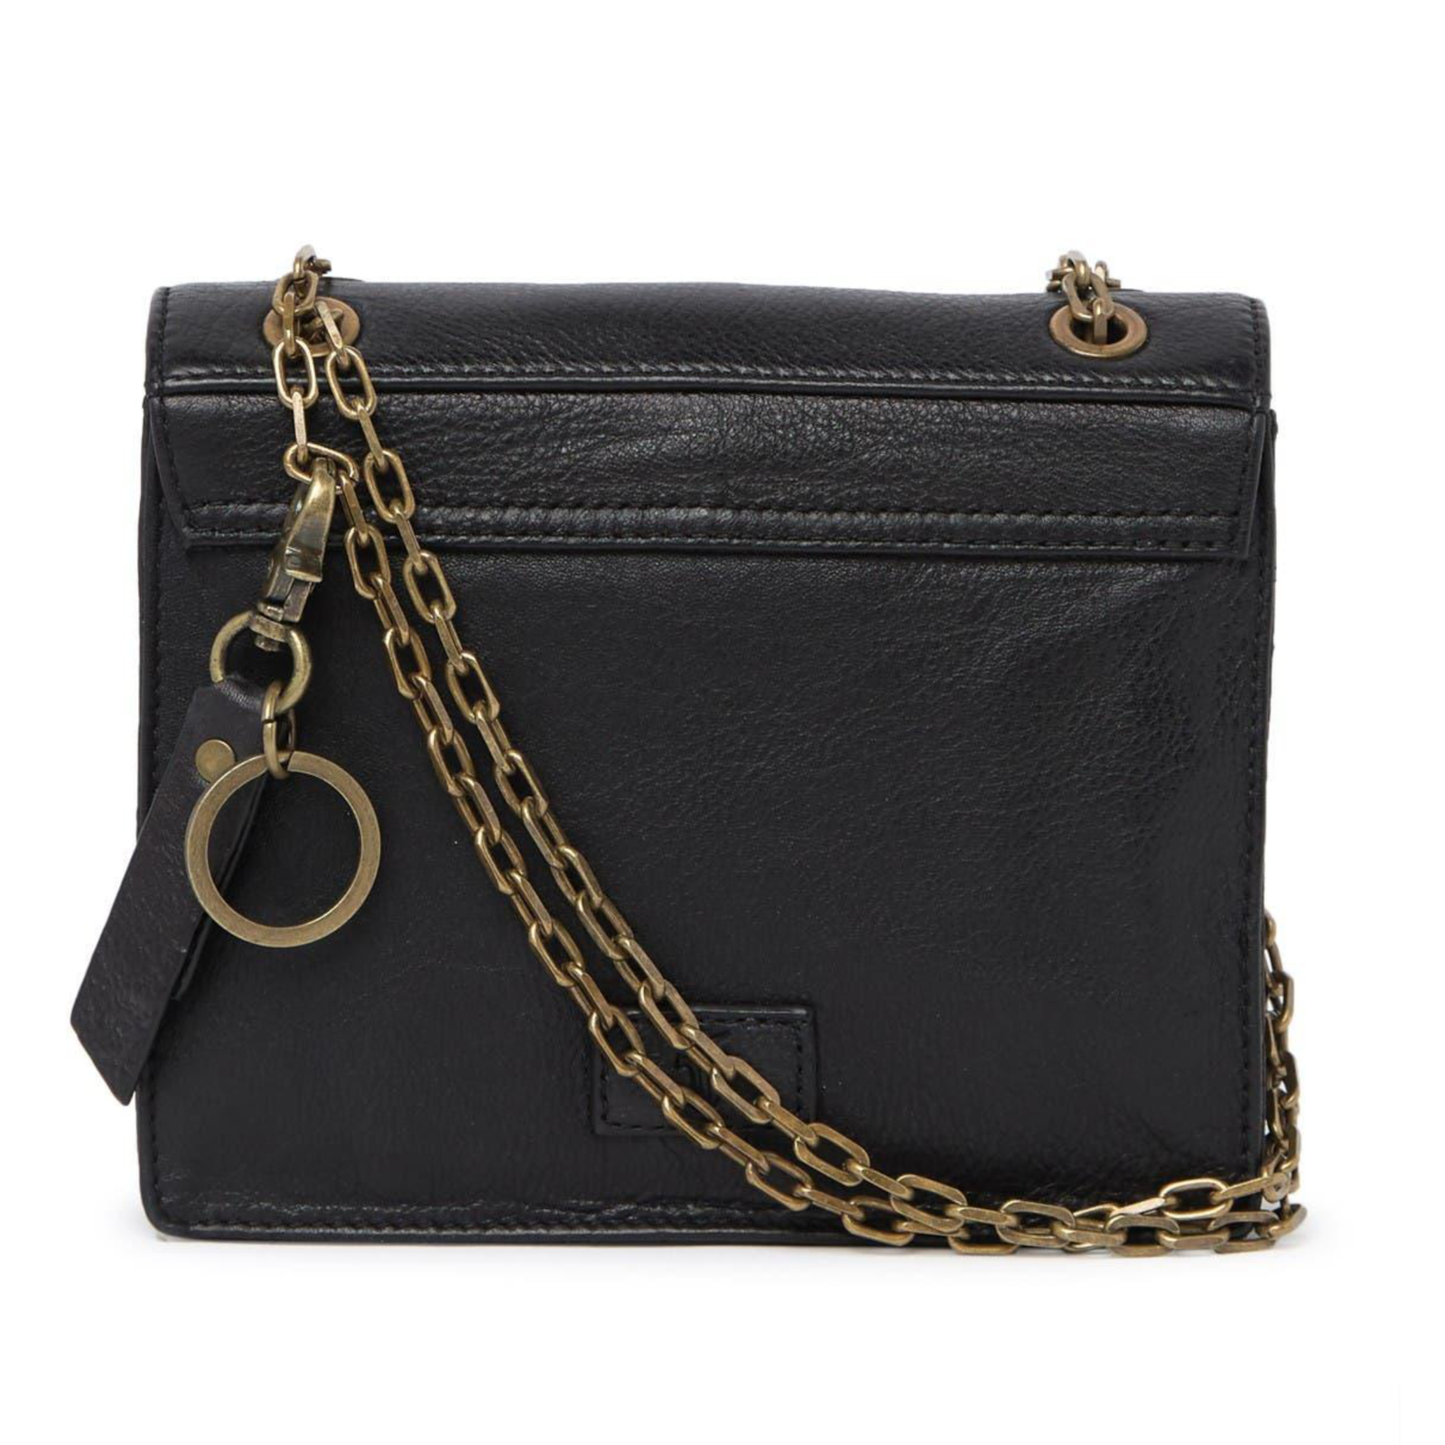 FRYE Jade Leather Studded Weave Trim Chain Srtap Shoulder Bag